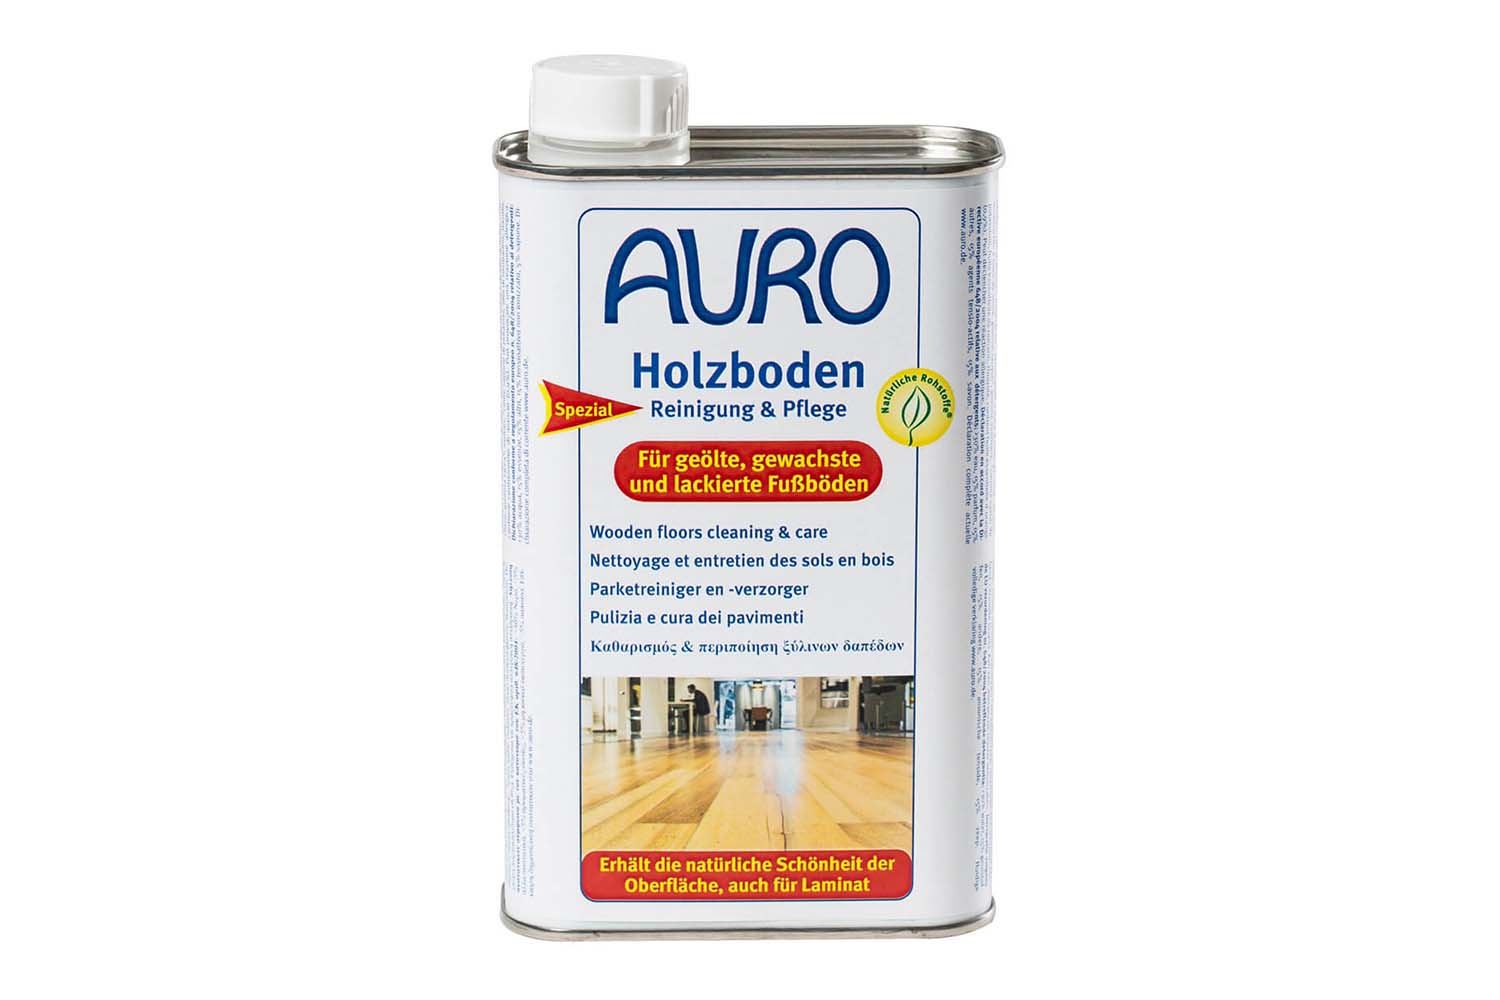 Auro Holzboden Reinigung & Pflege Nr. 661